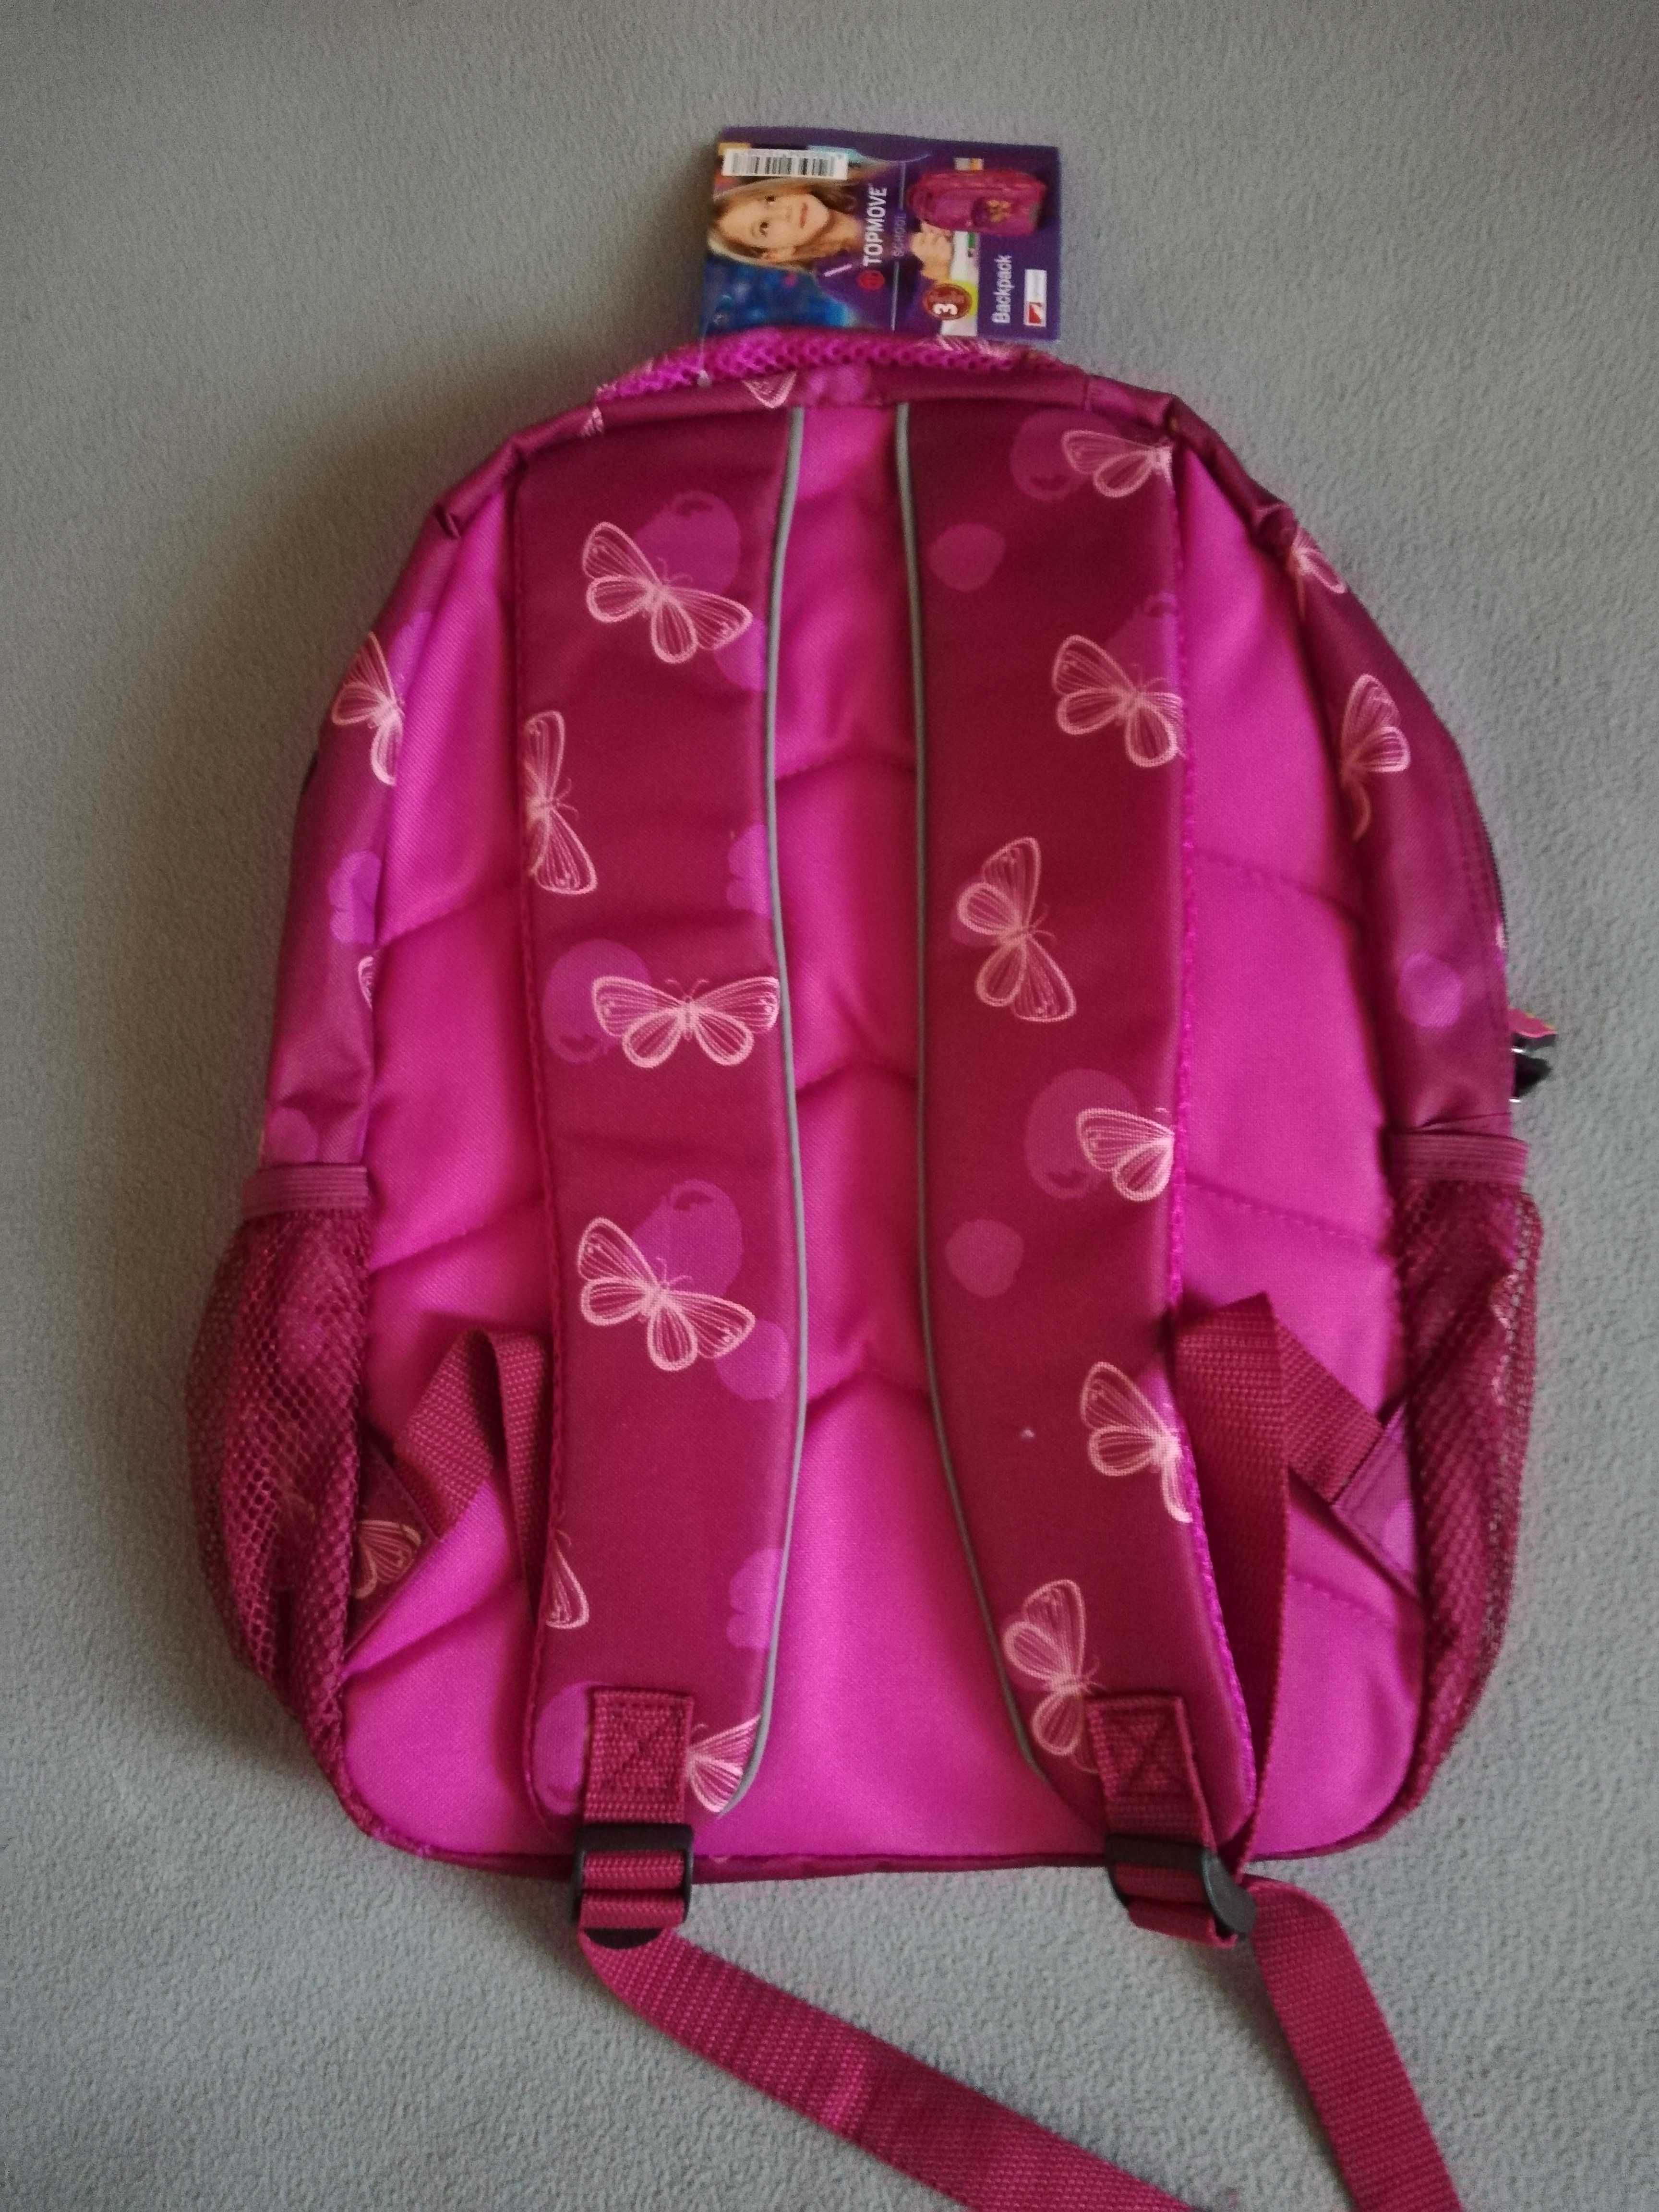 Nowy plecak szkolny z otworem na kabelek do słuchawek